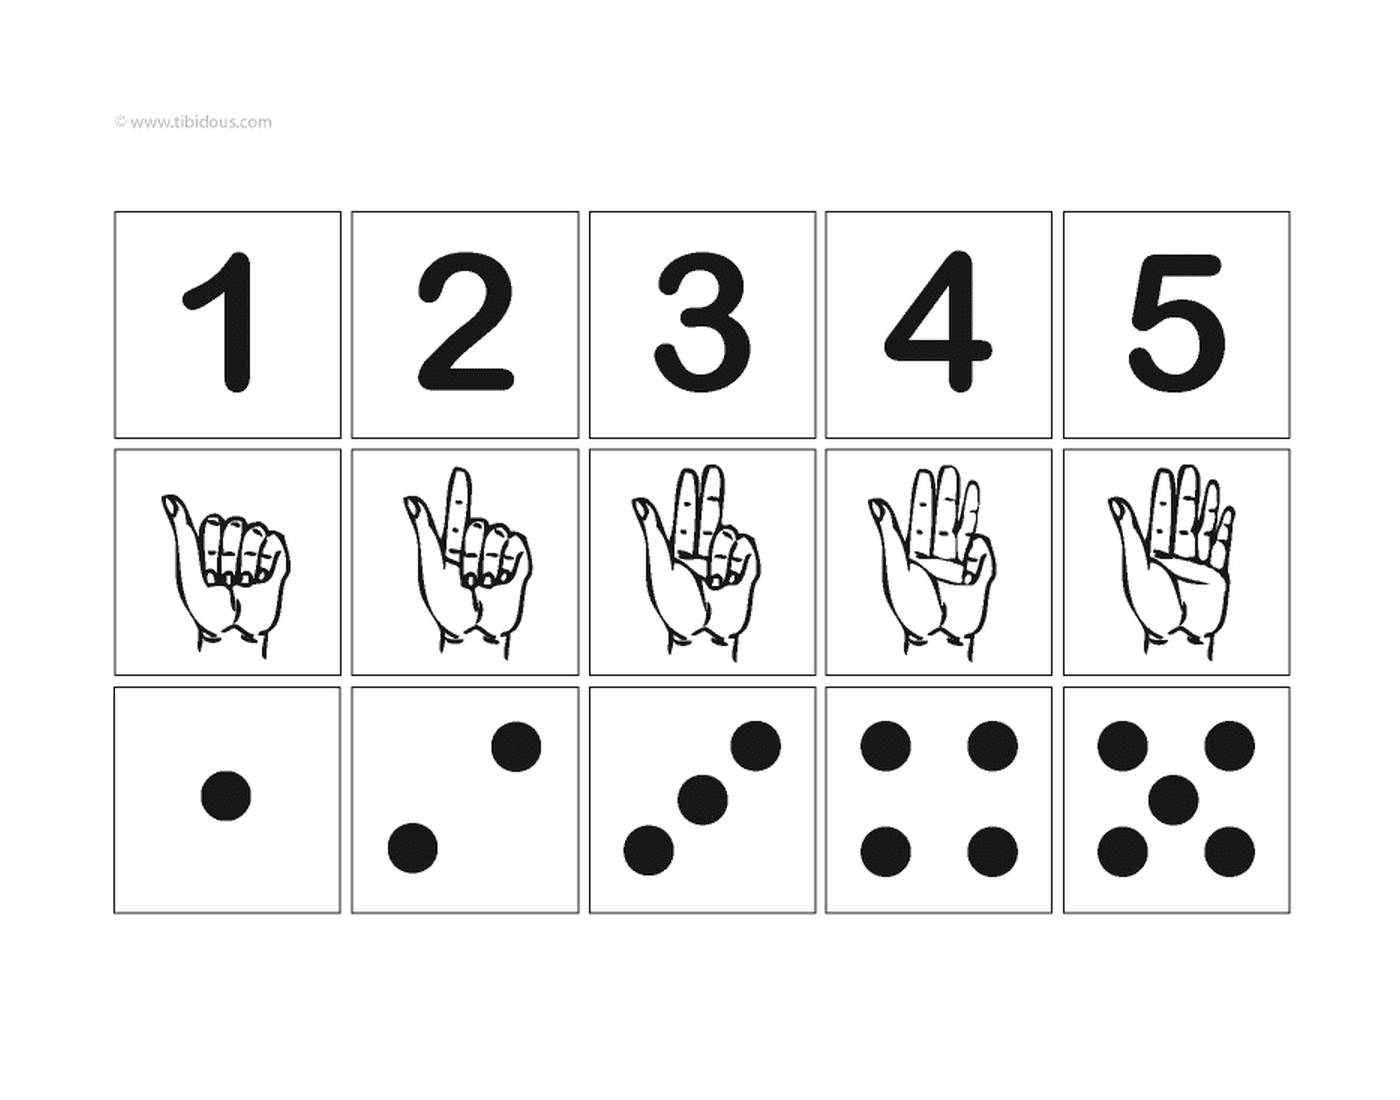  Числа от одного до пяти со знаком и иллюстрацией 